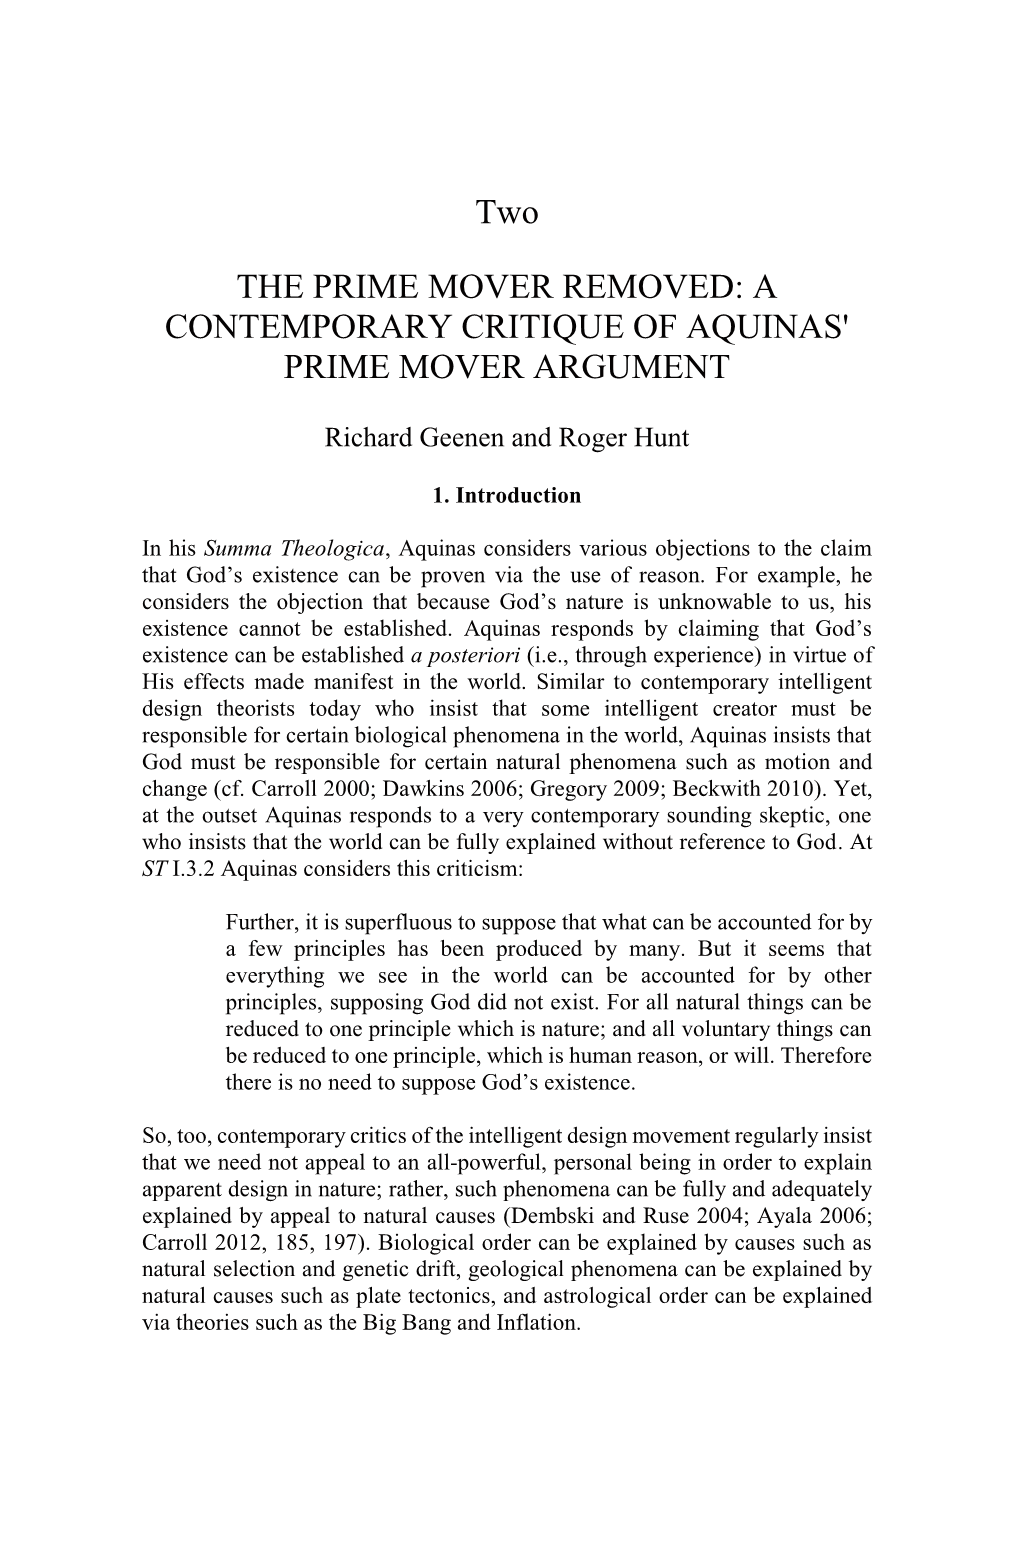 A Contemporary Critique of Aquinas' Prime Mover Argument